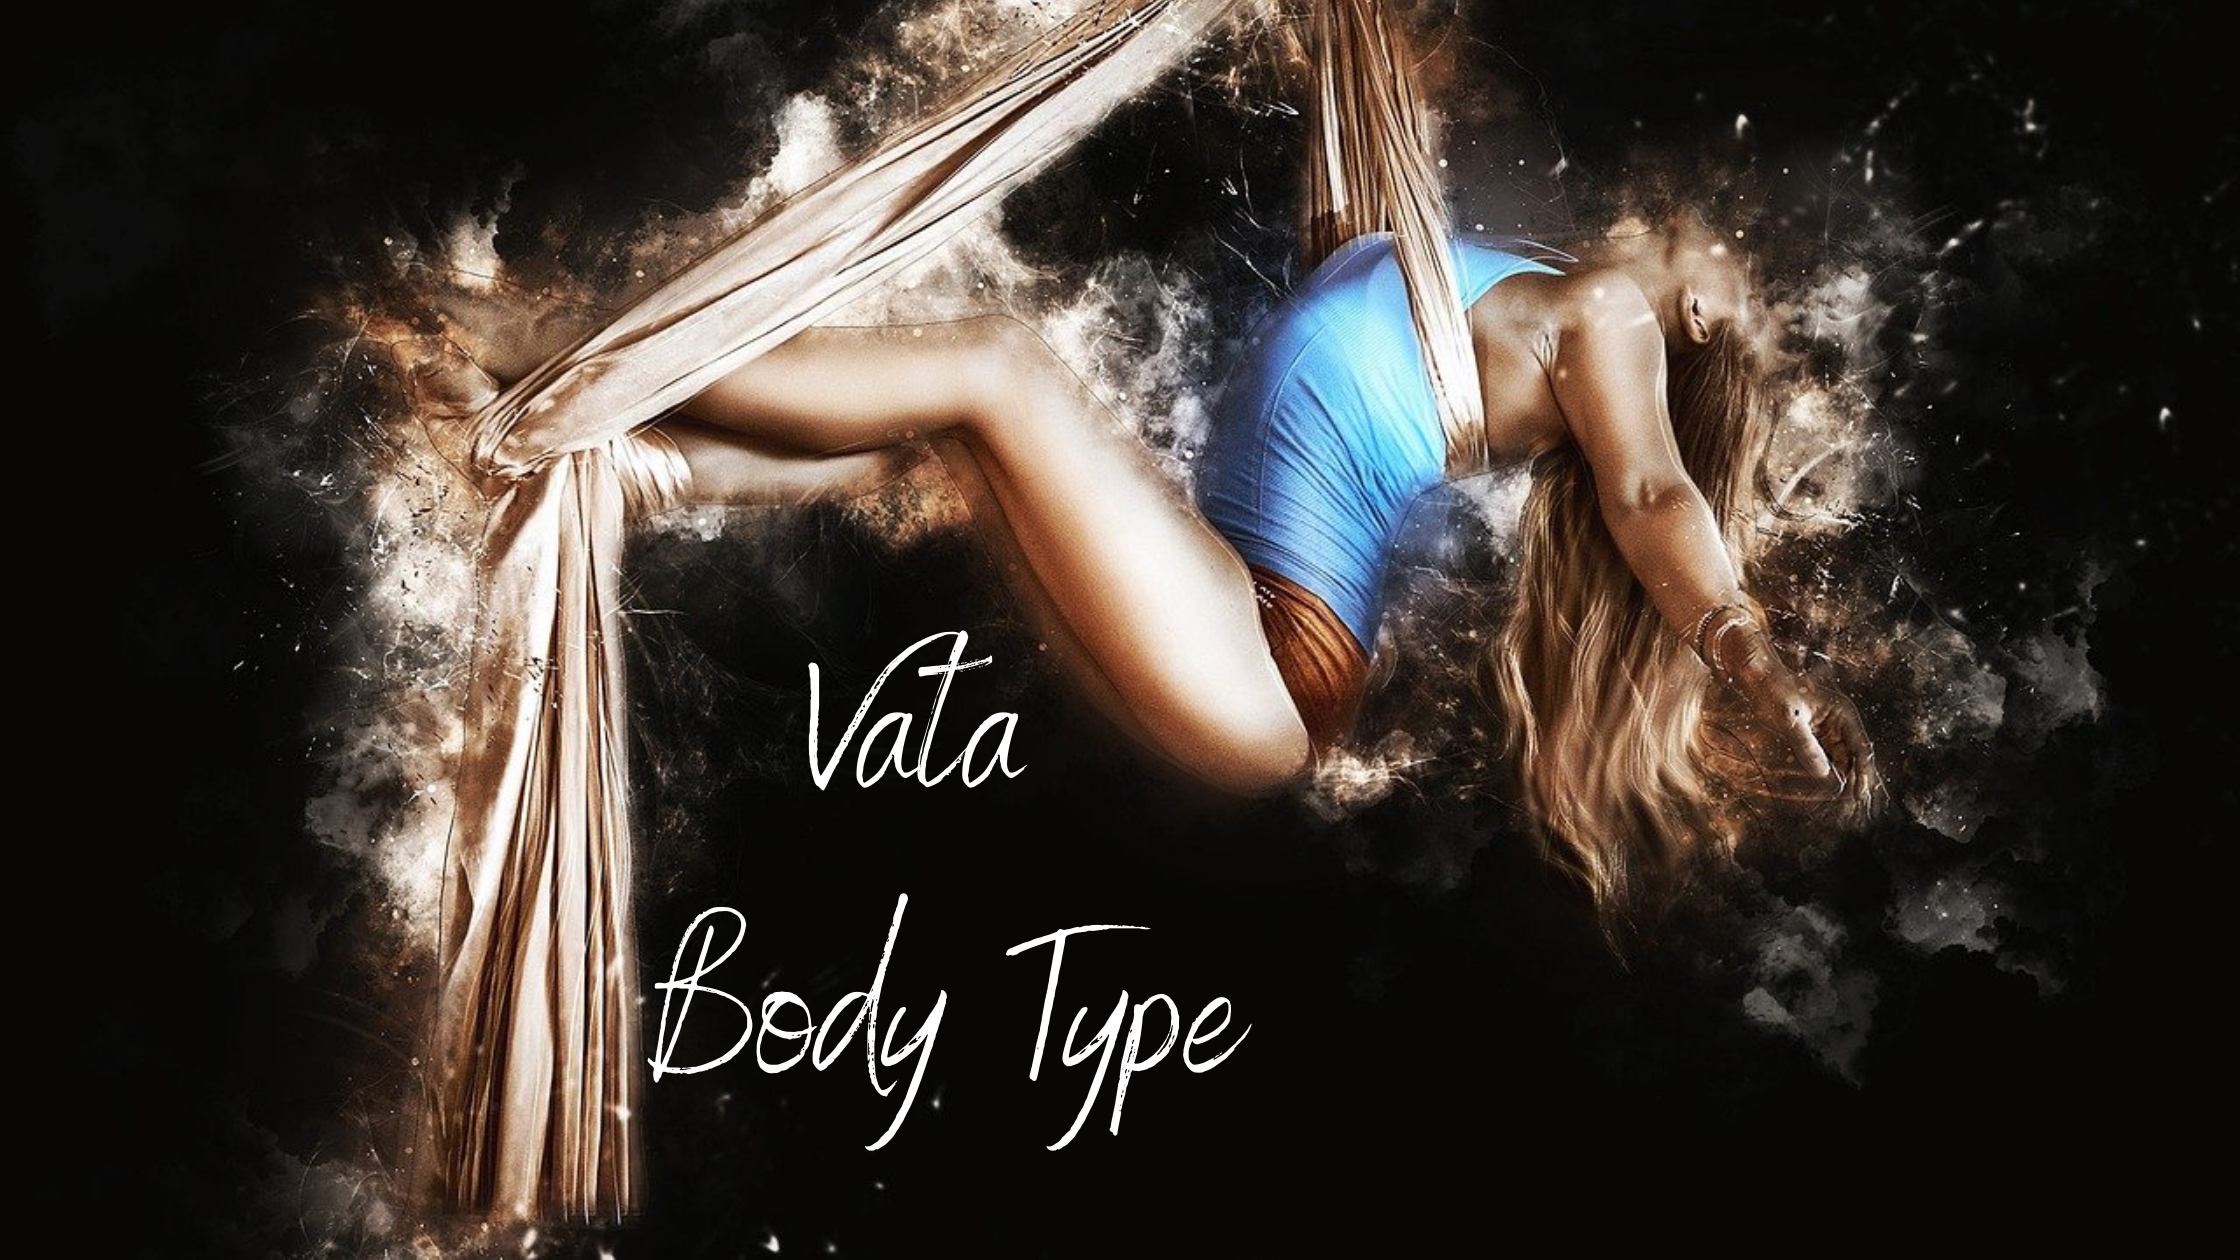 vata body type